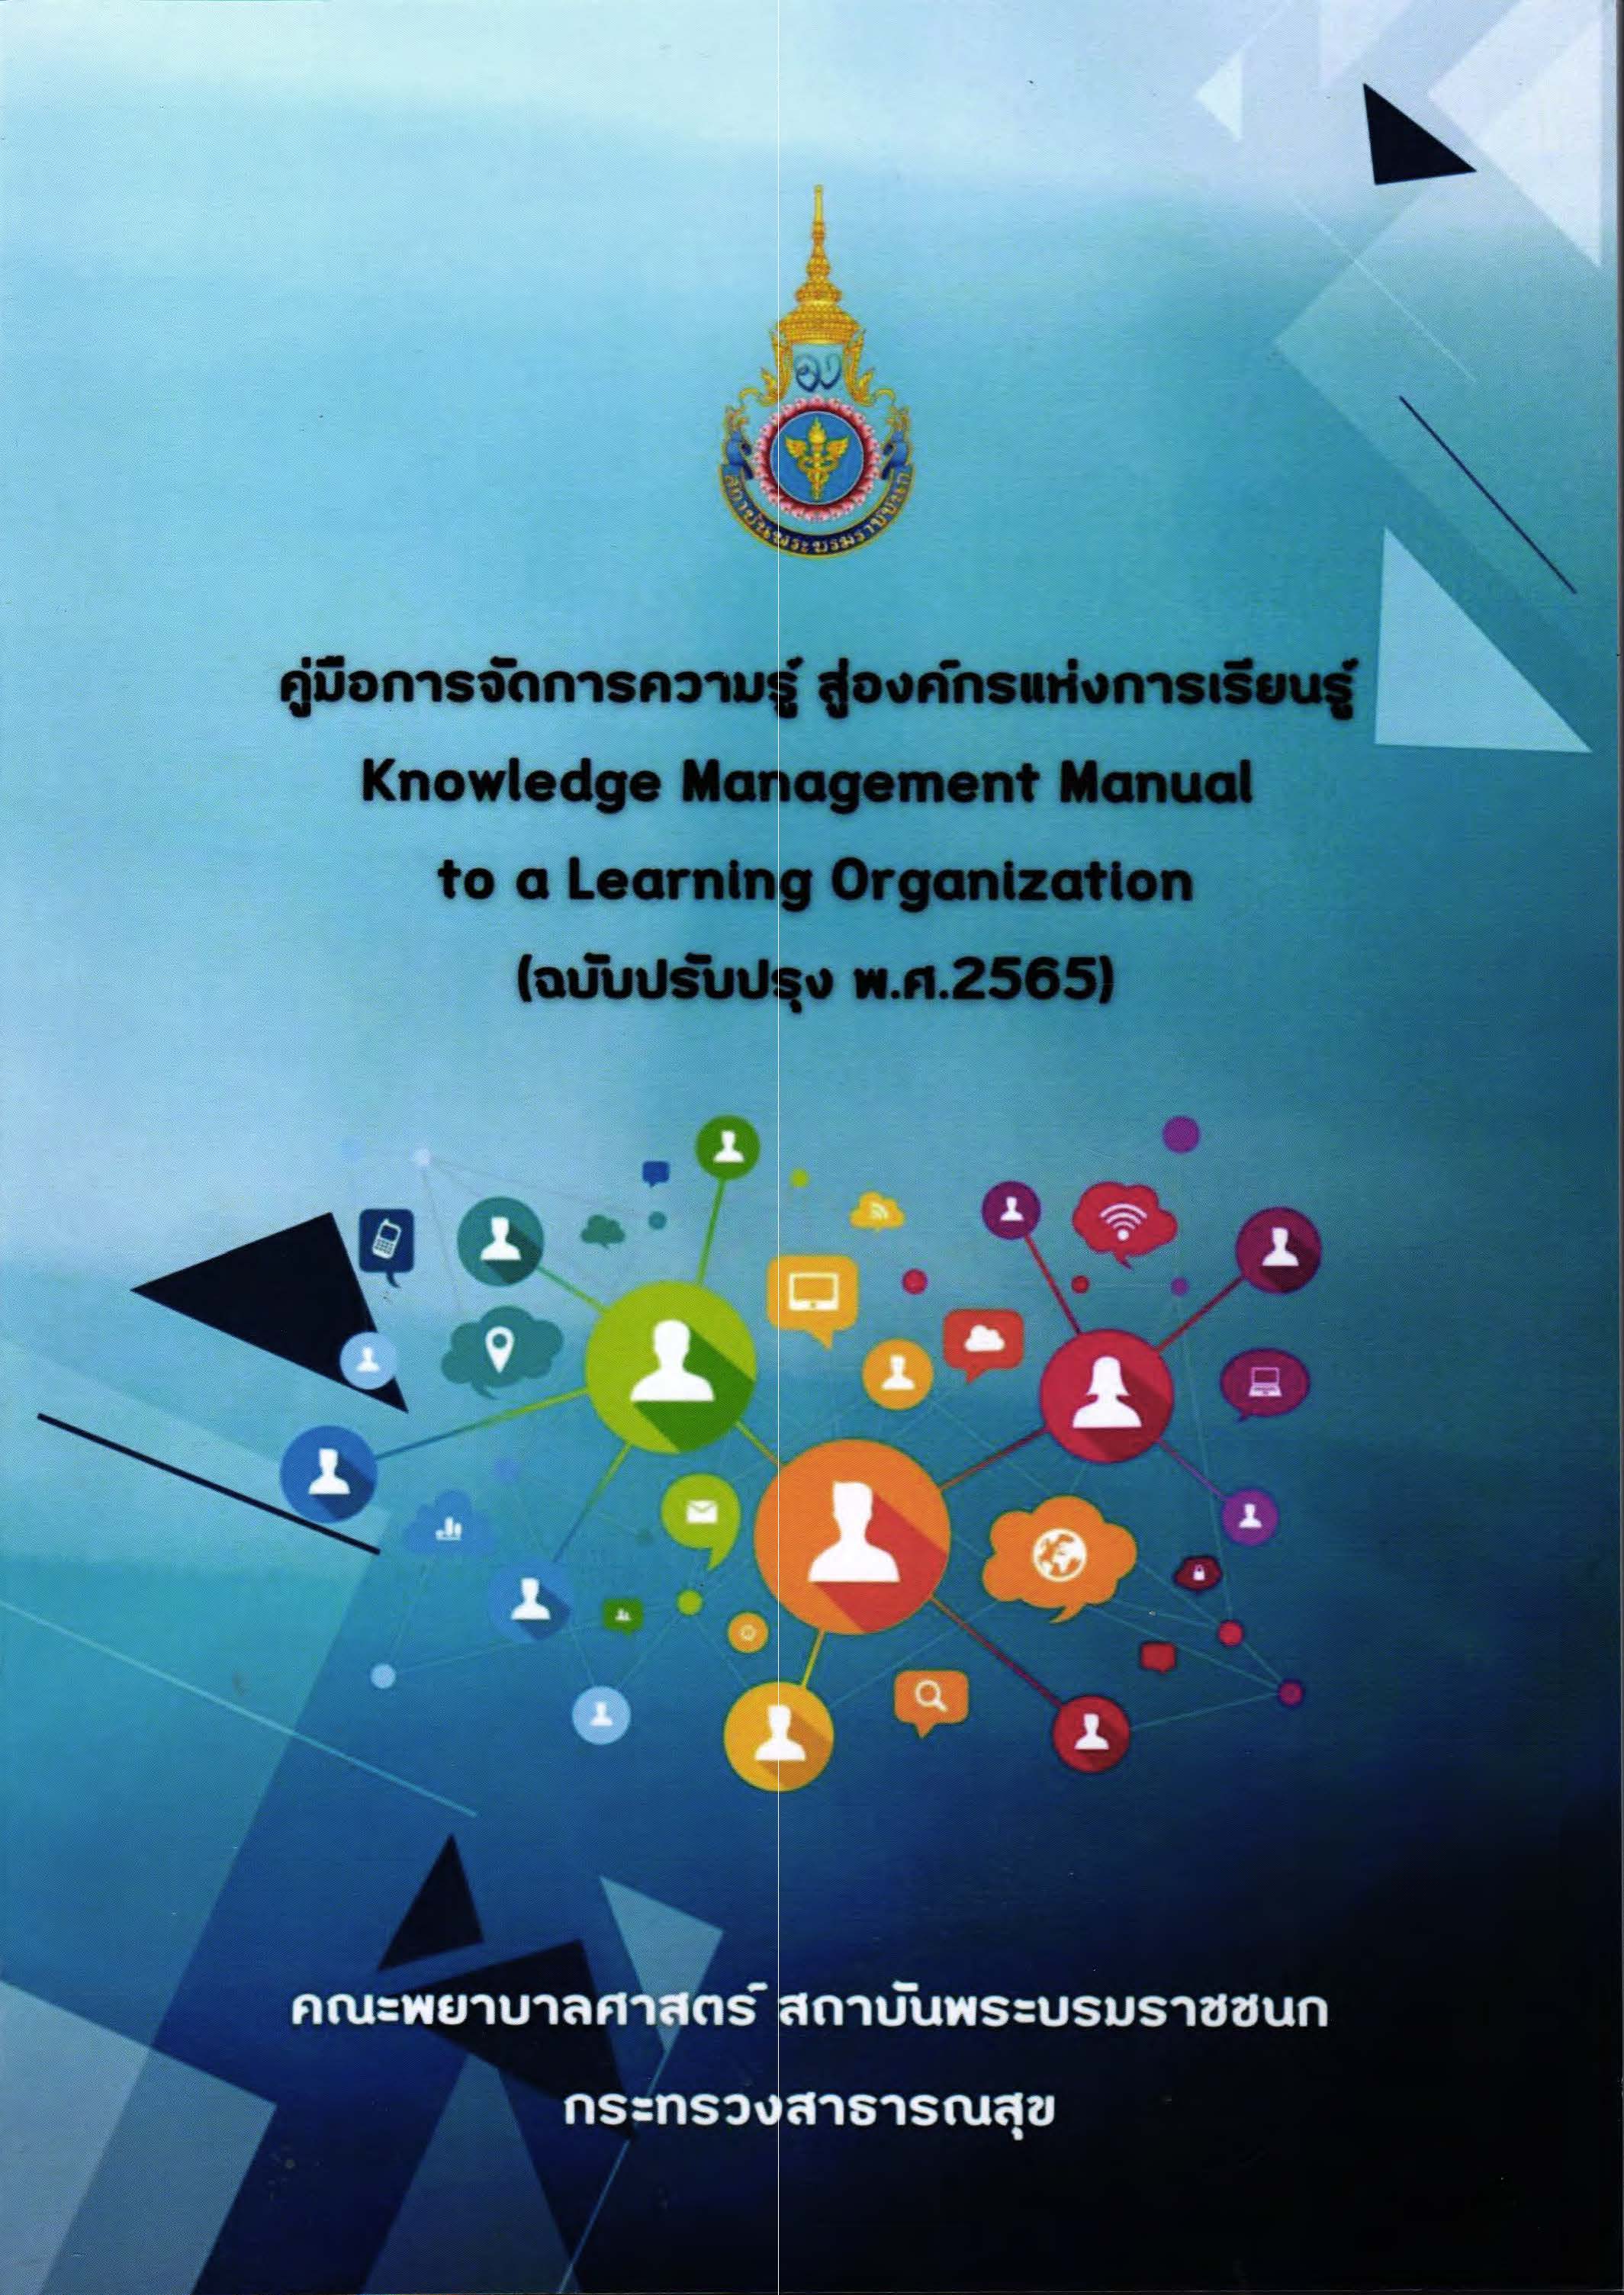 คู่มือการจัดการความรู้ สู่องค์กรแห่งการเรียนรู้ = Knowledge management manual to a learning organization  (ฉบับปรับปรุง พ.ศ.2565)